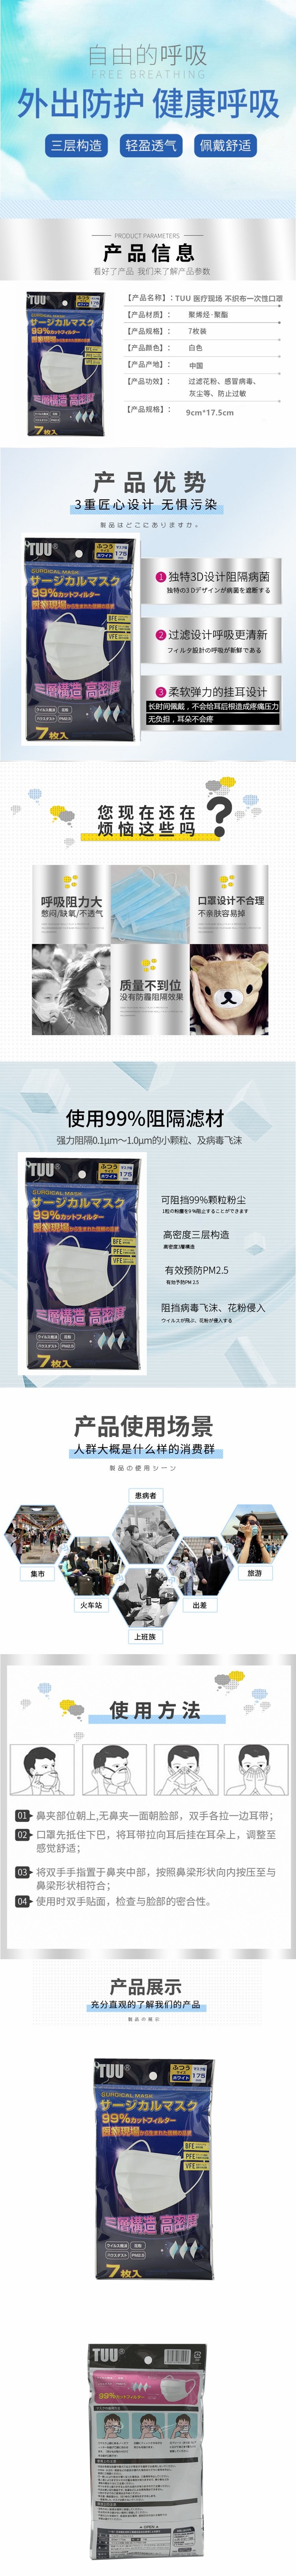 【日本DHL直邮】必备 日本 TUU 不织布 MASK 99%防病毒防花粉防PM2.5 一次性口罩 7枚入※DHL发货